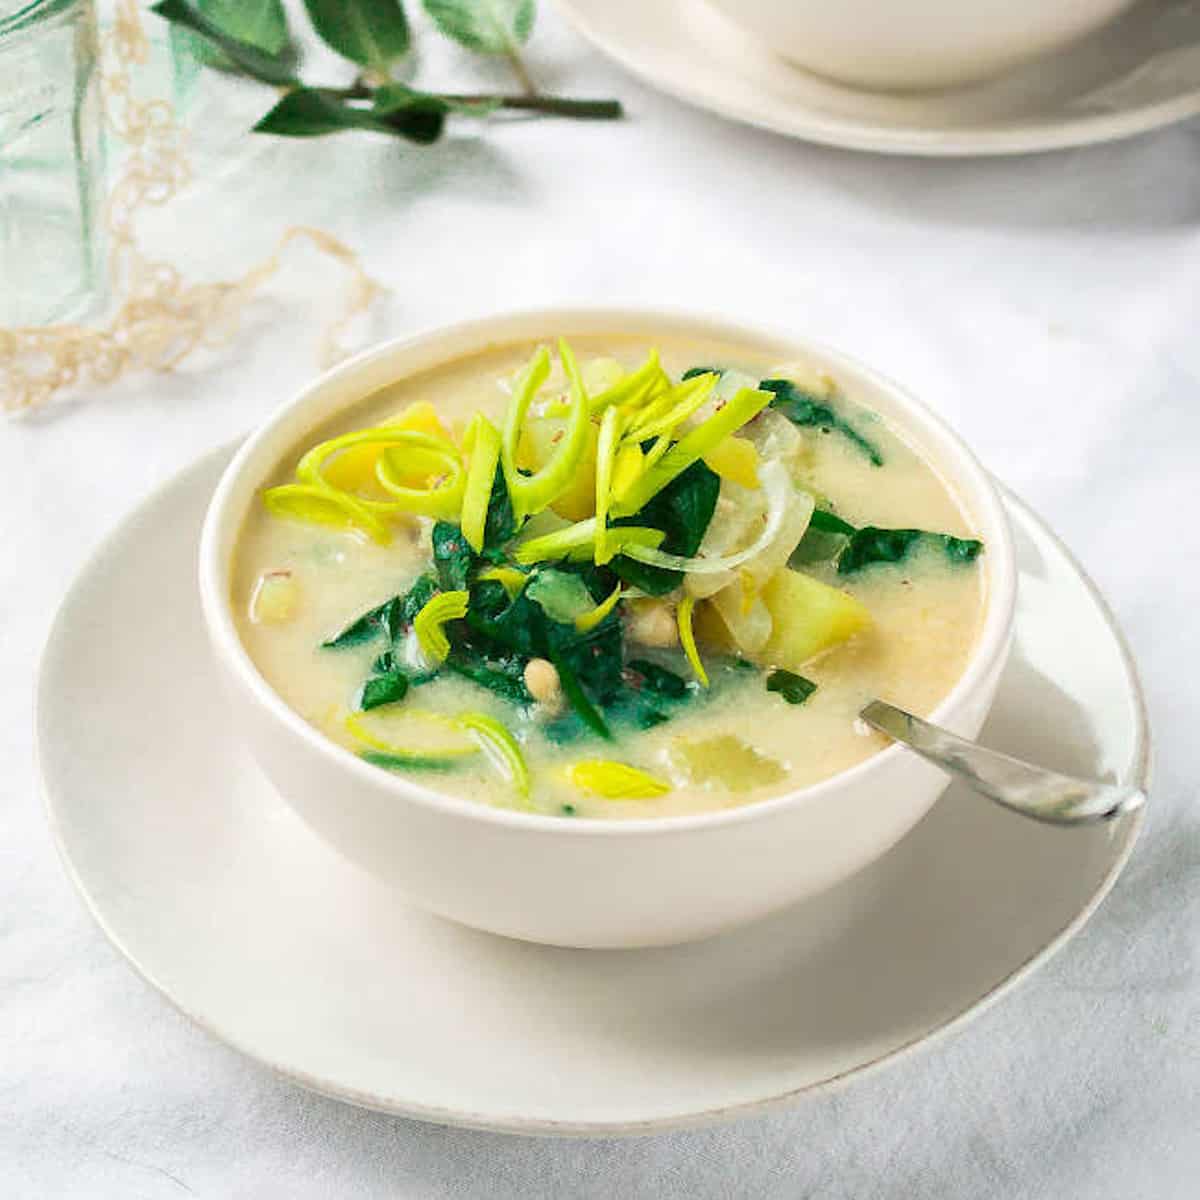 Bean and potato soup in white soup bowls.